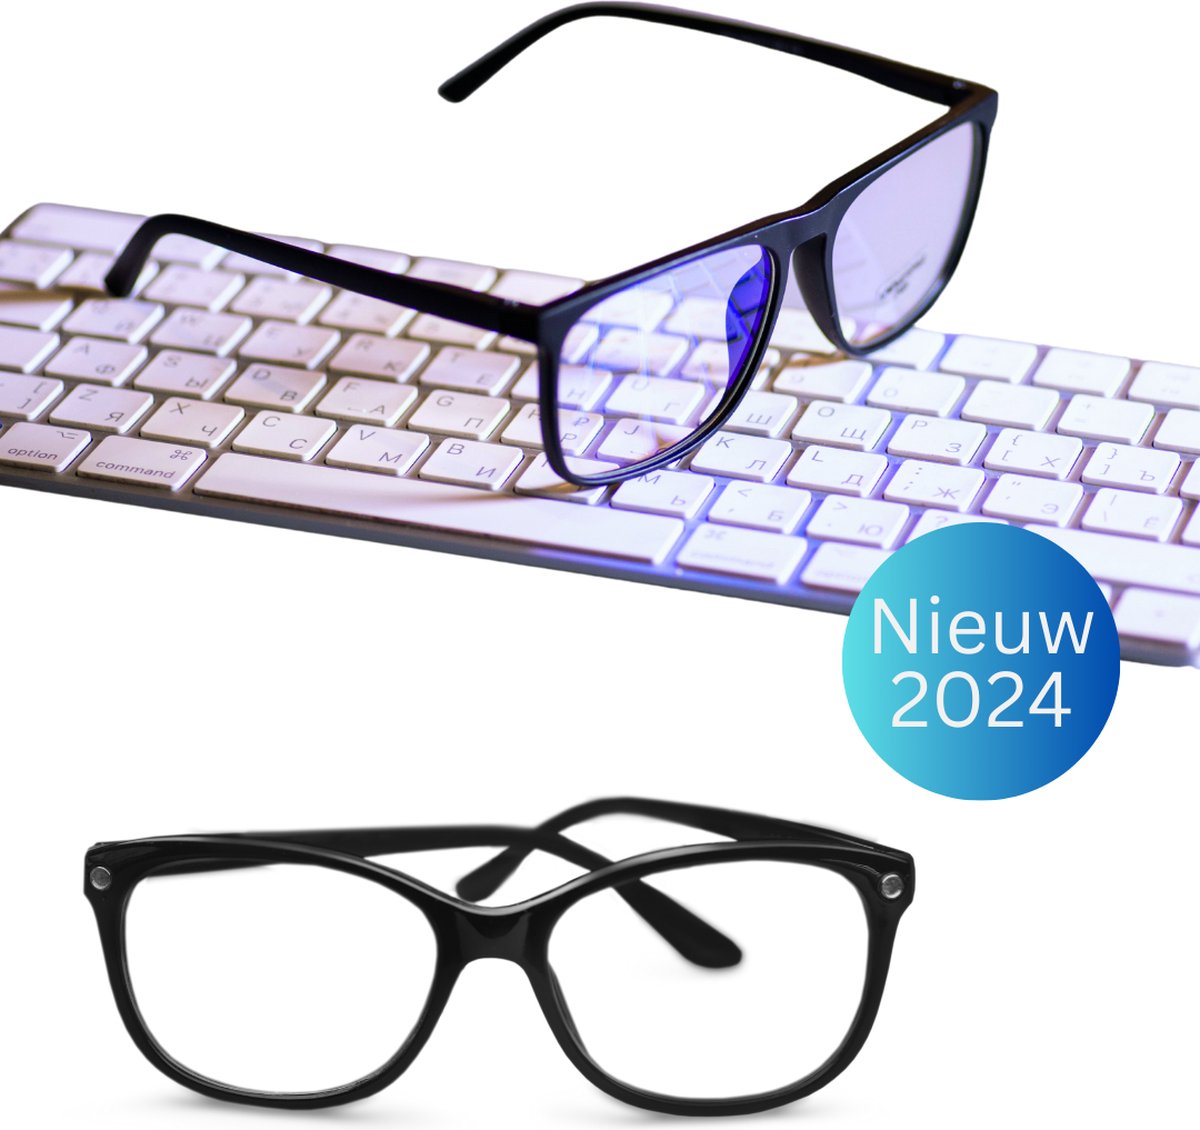 Blauw Licht Bril Zonder Sterkte - Blauw Licht Bril - Computerbril - Bril met blauw licht filter - Beeldschermbril